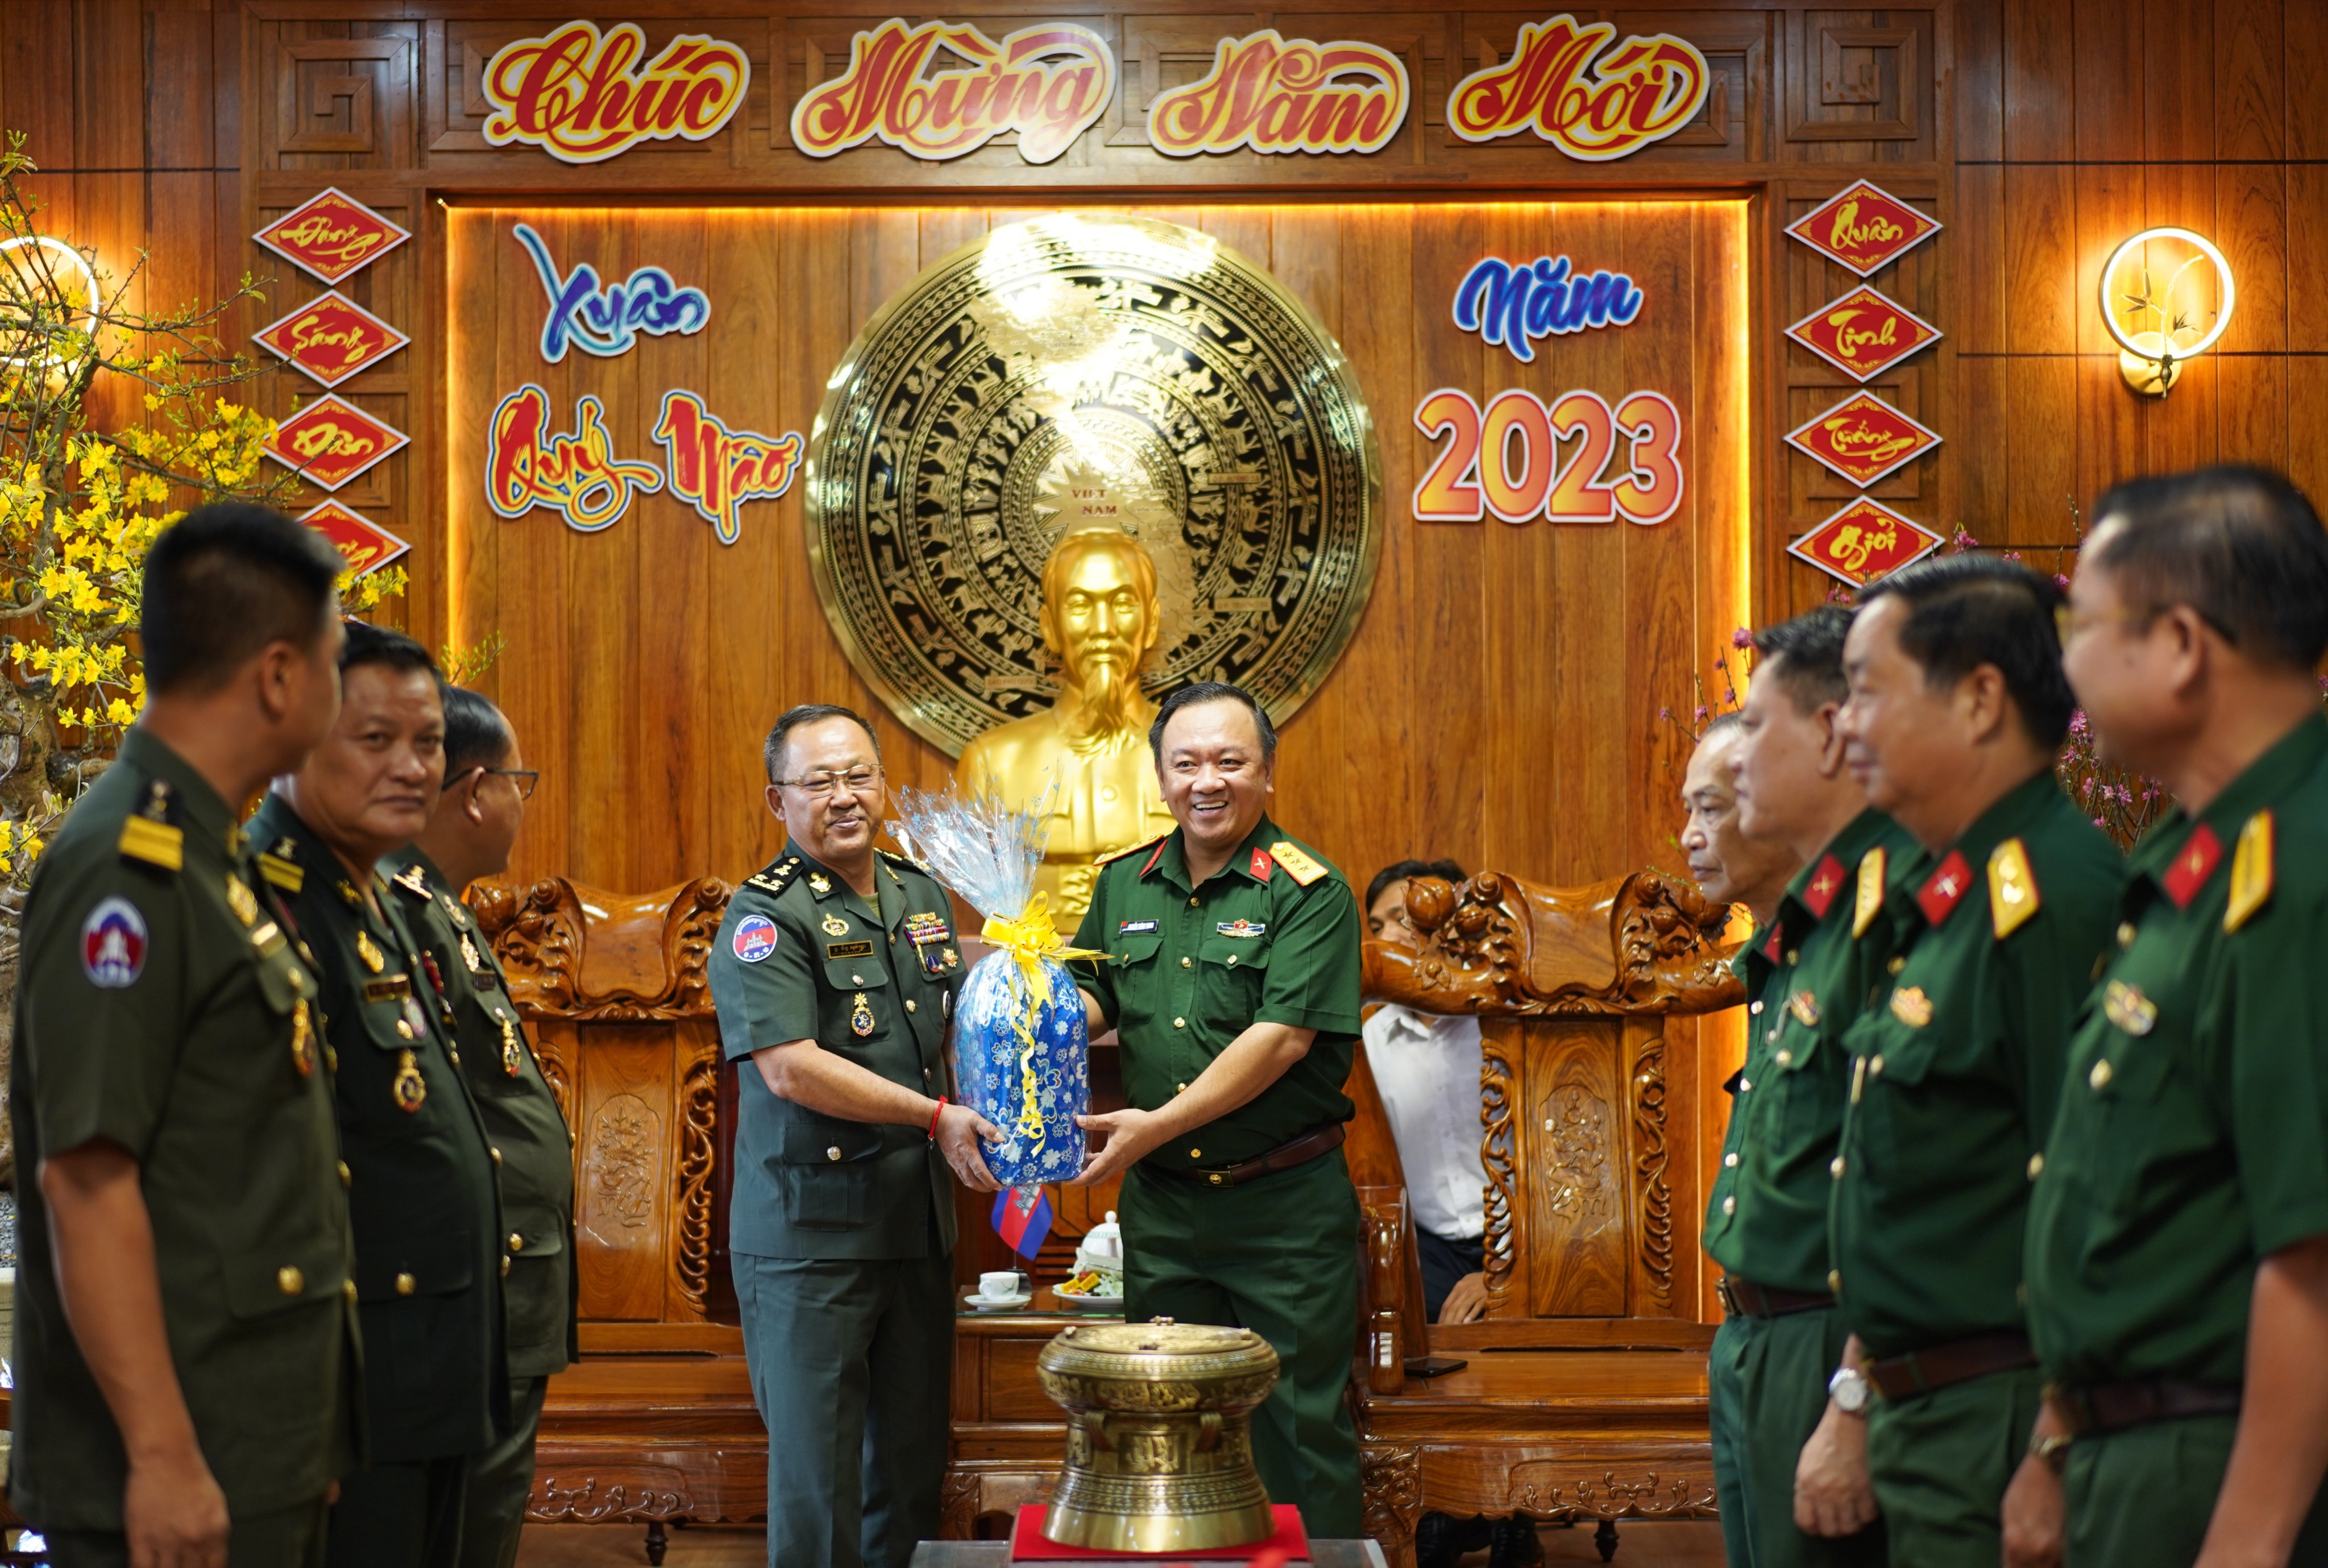 Trung tướng Chan So Pheak Tra, Chỉ huy trưởng Tiểu khu Quân sự Preah Vihear - Campuchia tặng quà Tết cho cán bộ, chiến sĩ Bộ CHQS tỉnh.